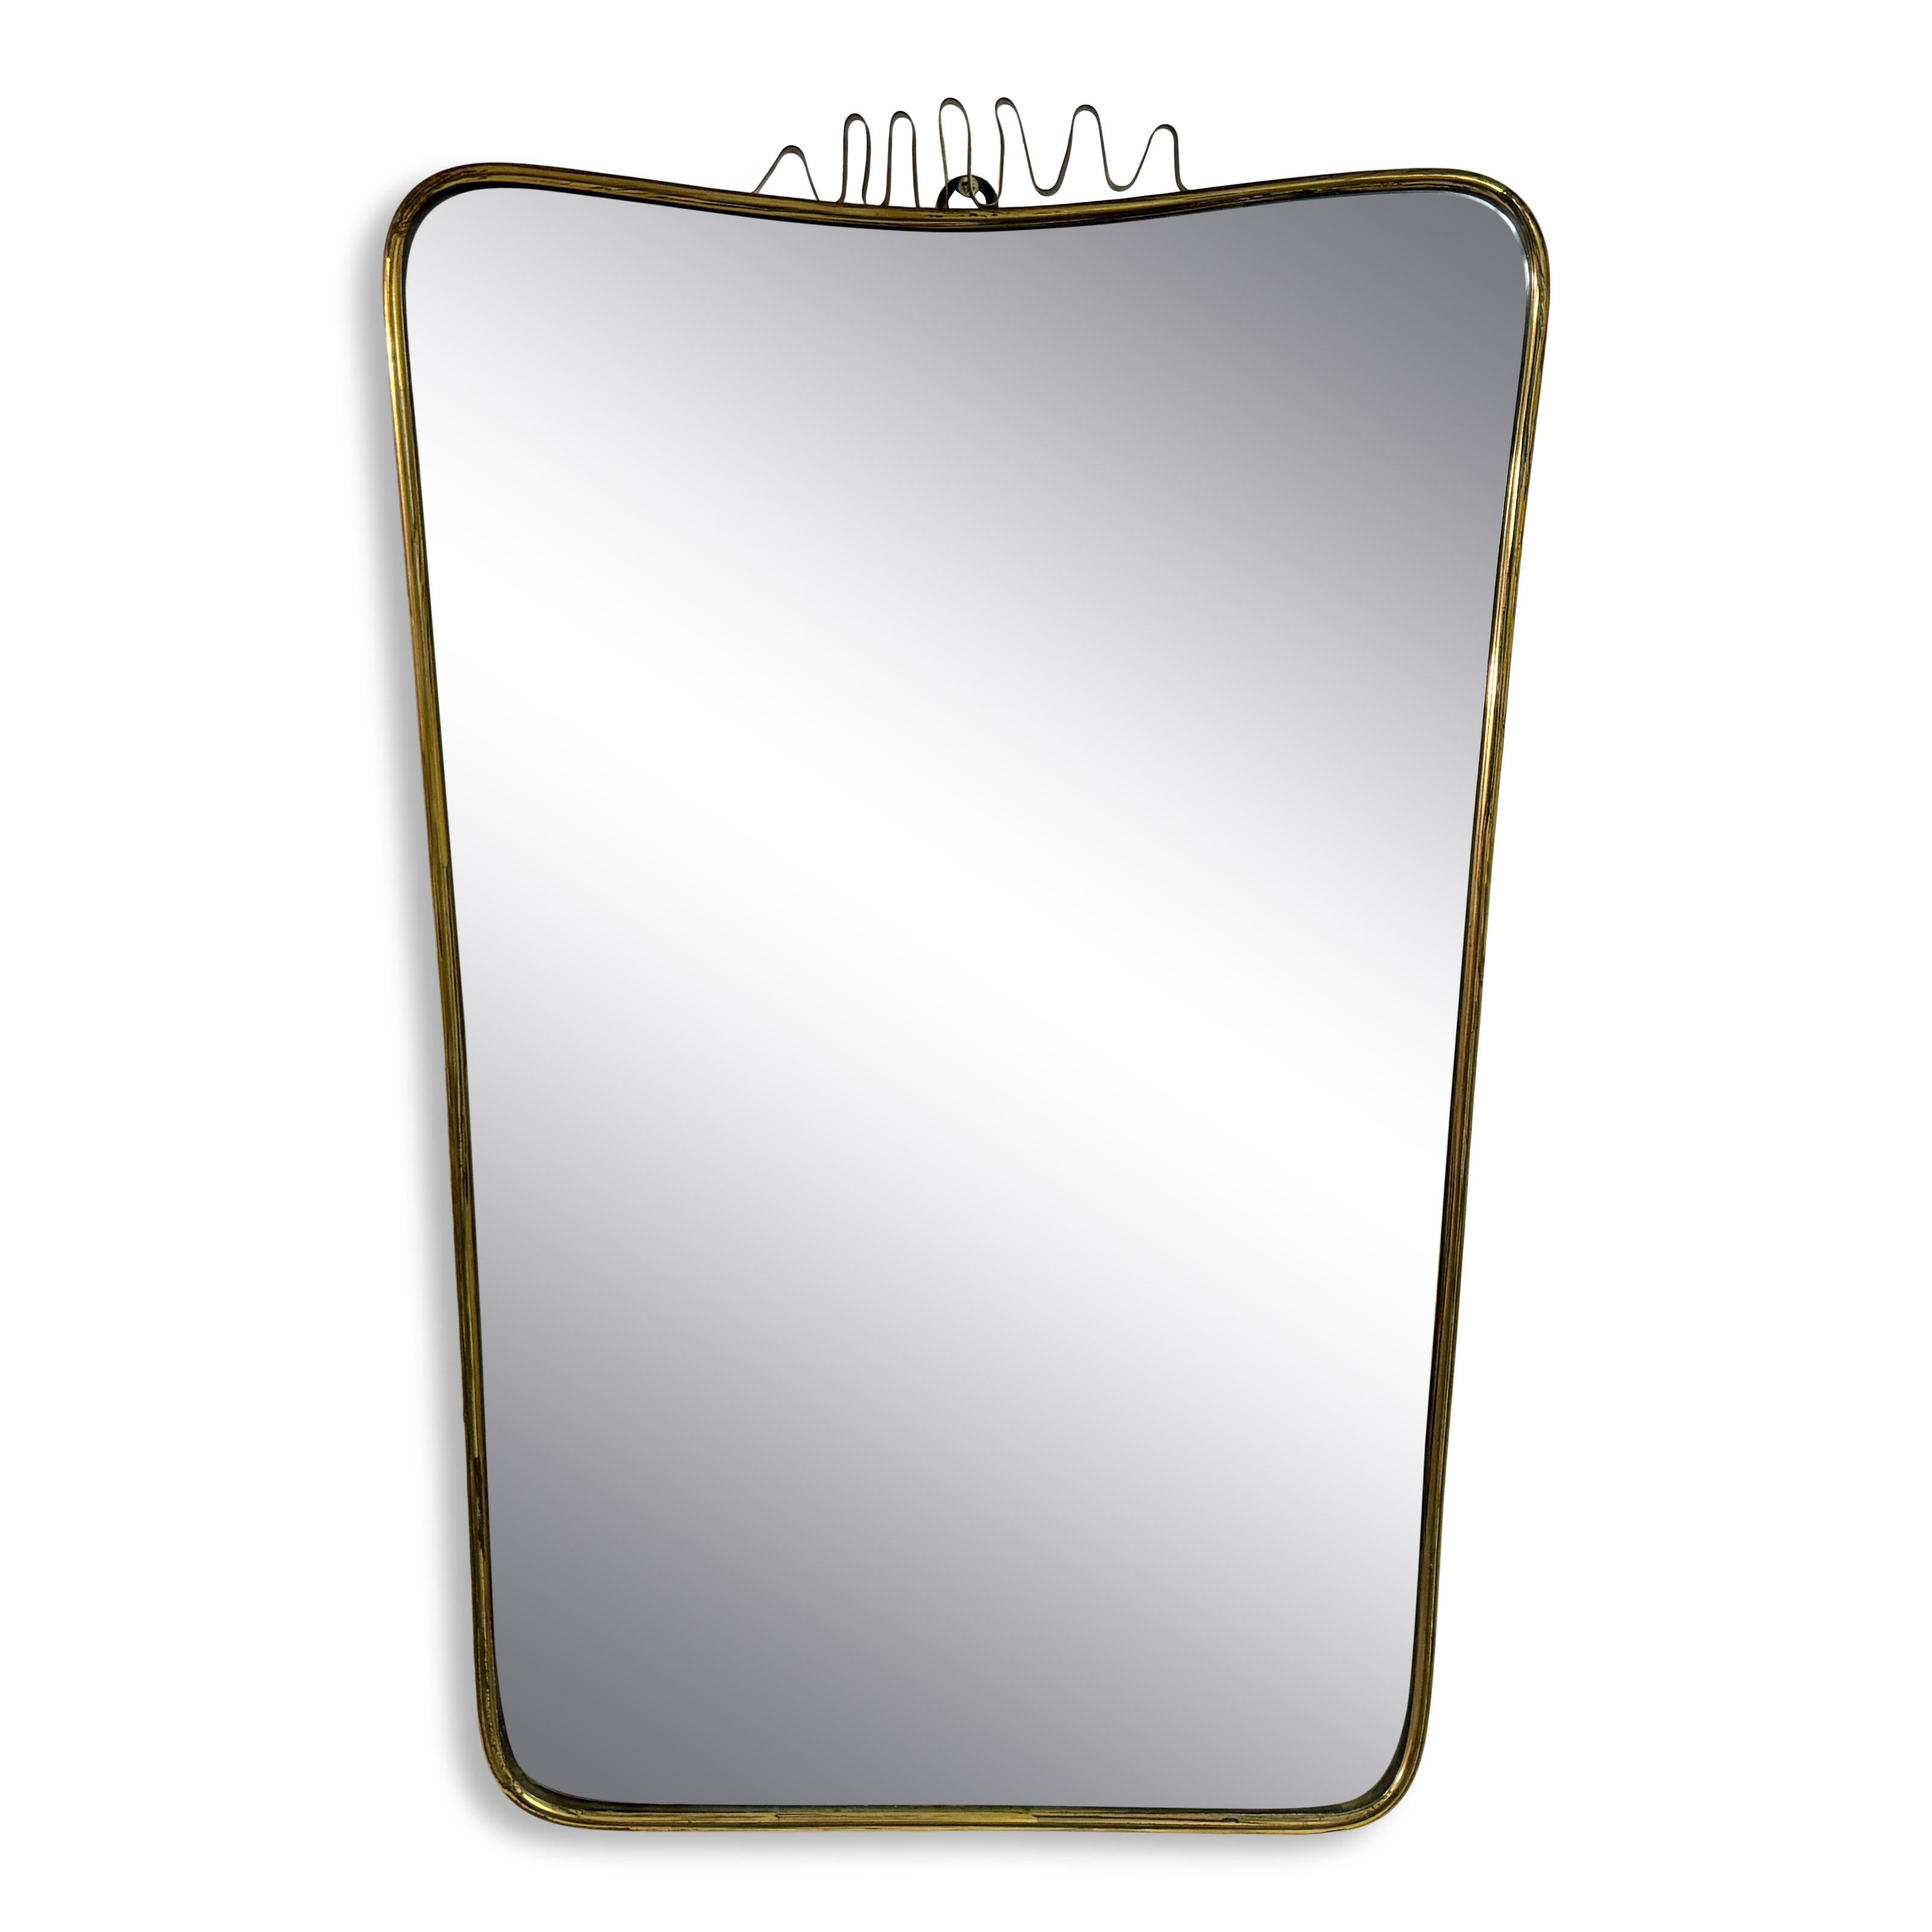 Miroir

Cadre en laiton

Fil métallique plat en laiton

Patiné

Très légères rousseurs sur le miroir

Italie années 1950

